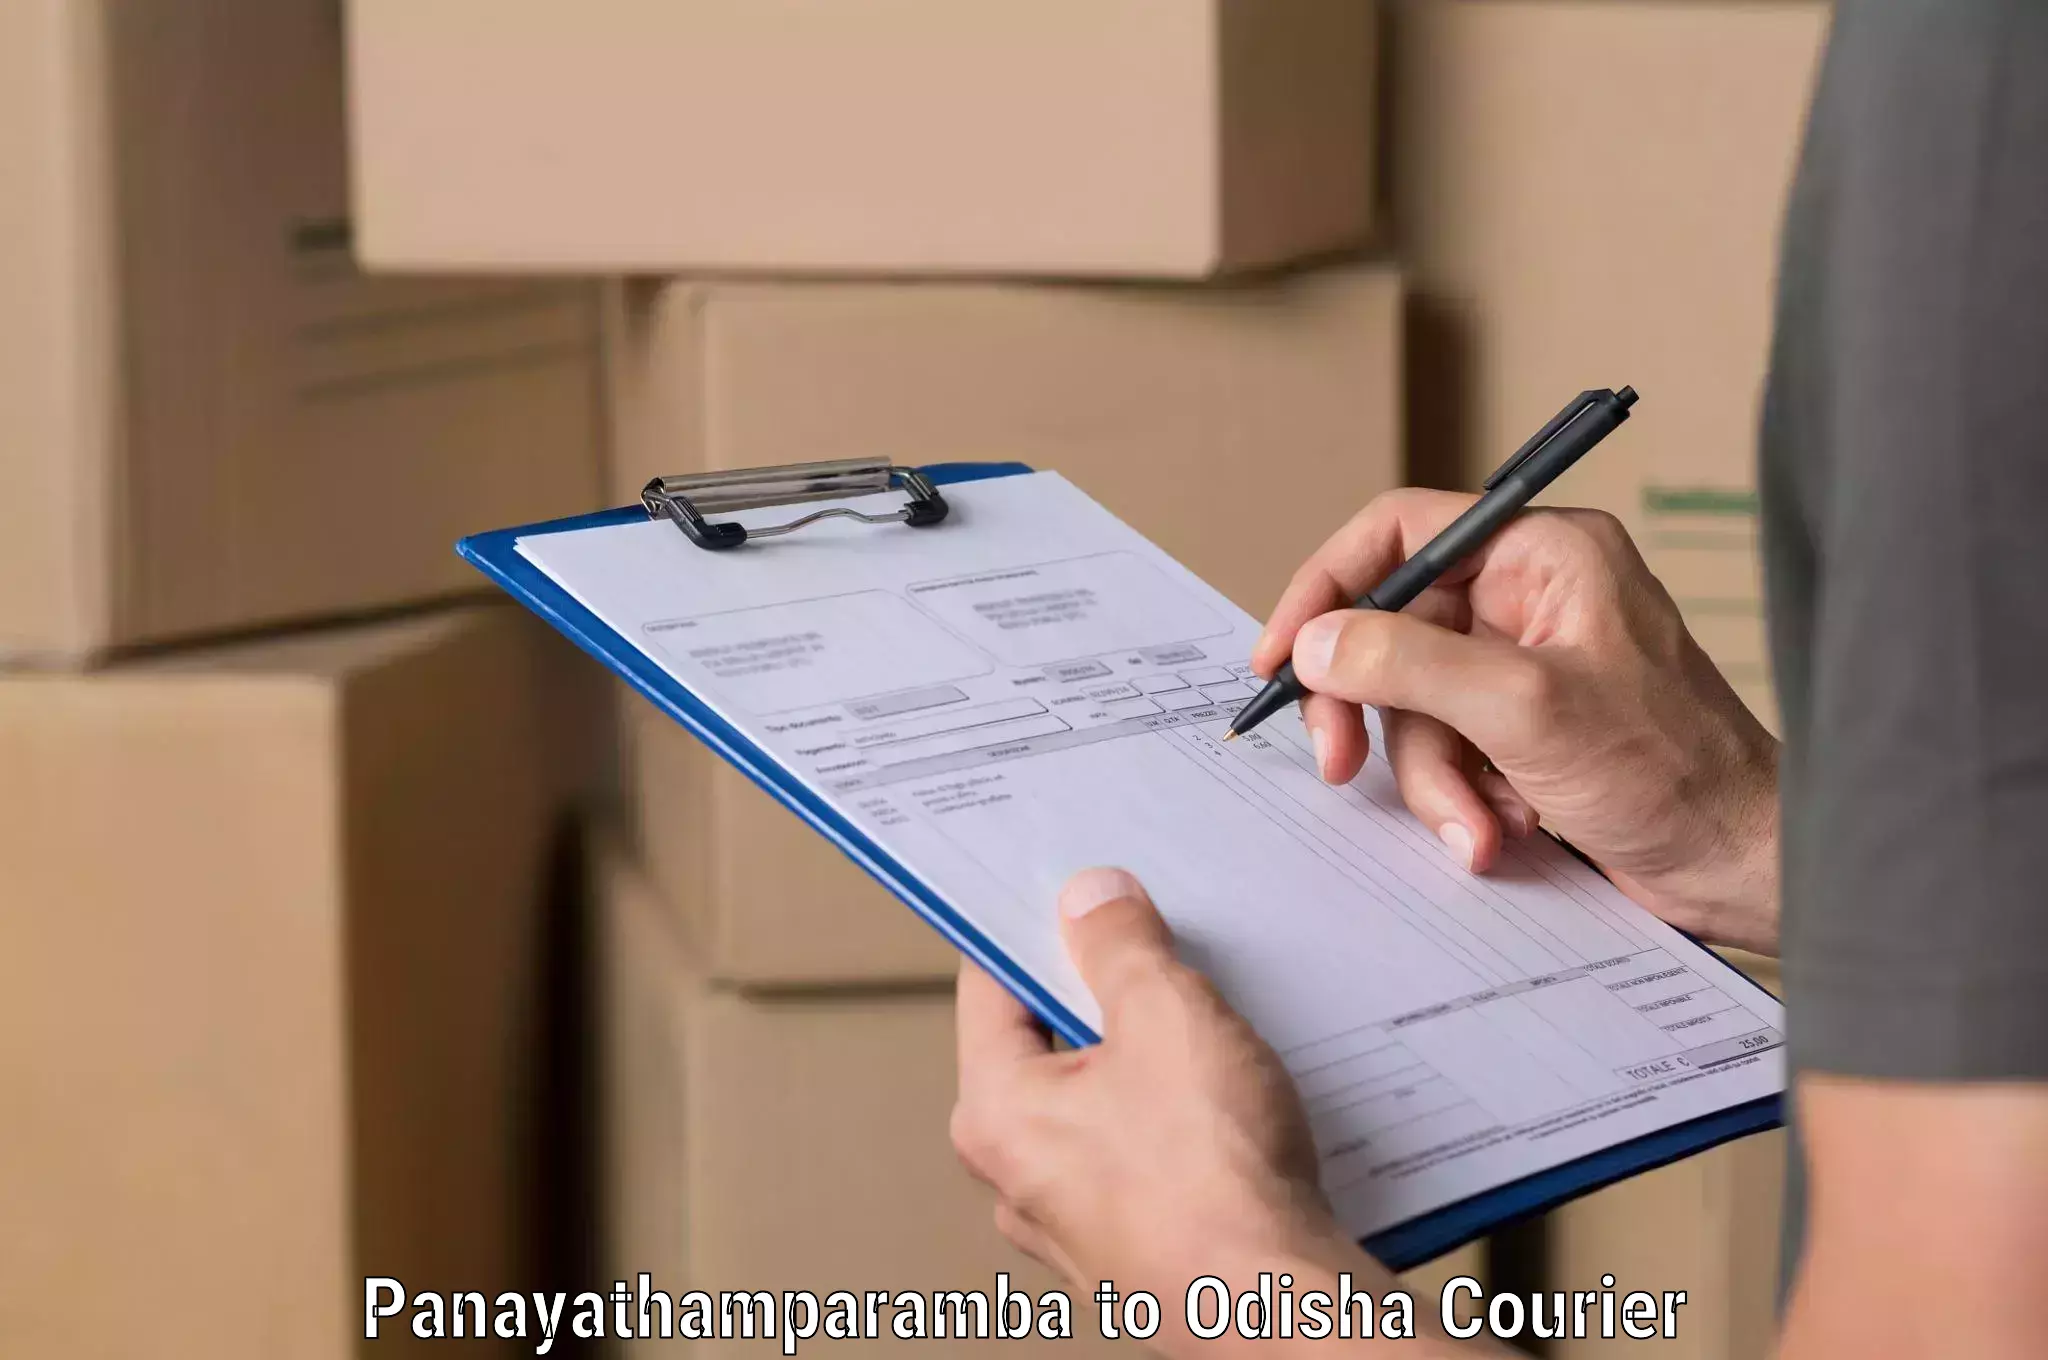 Express delivery solutions Panayathamparamba to Agarpada